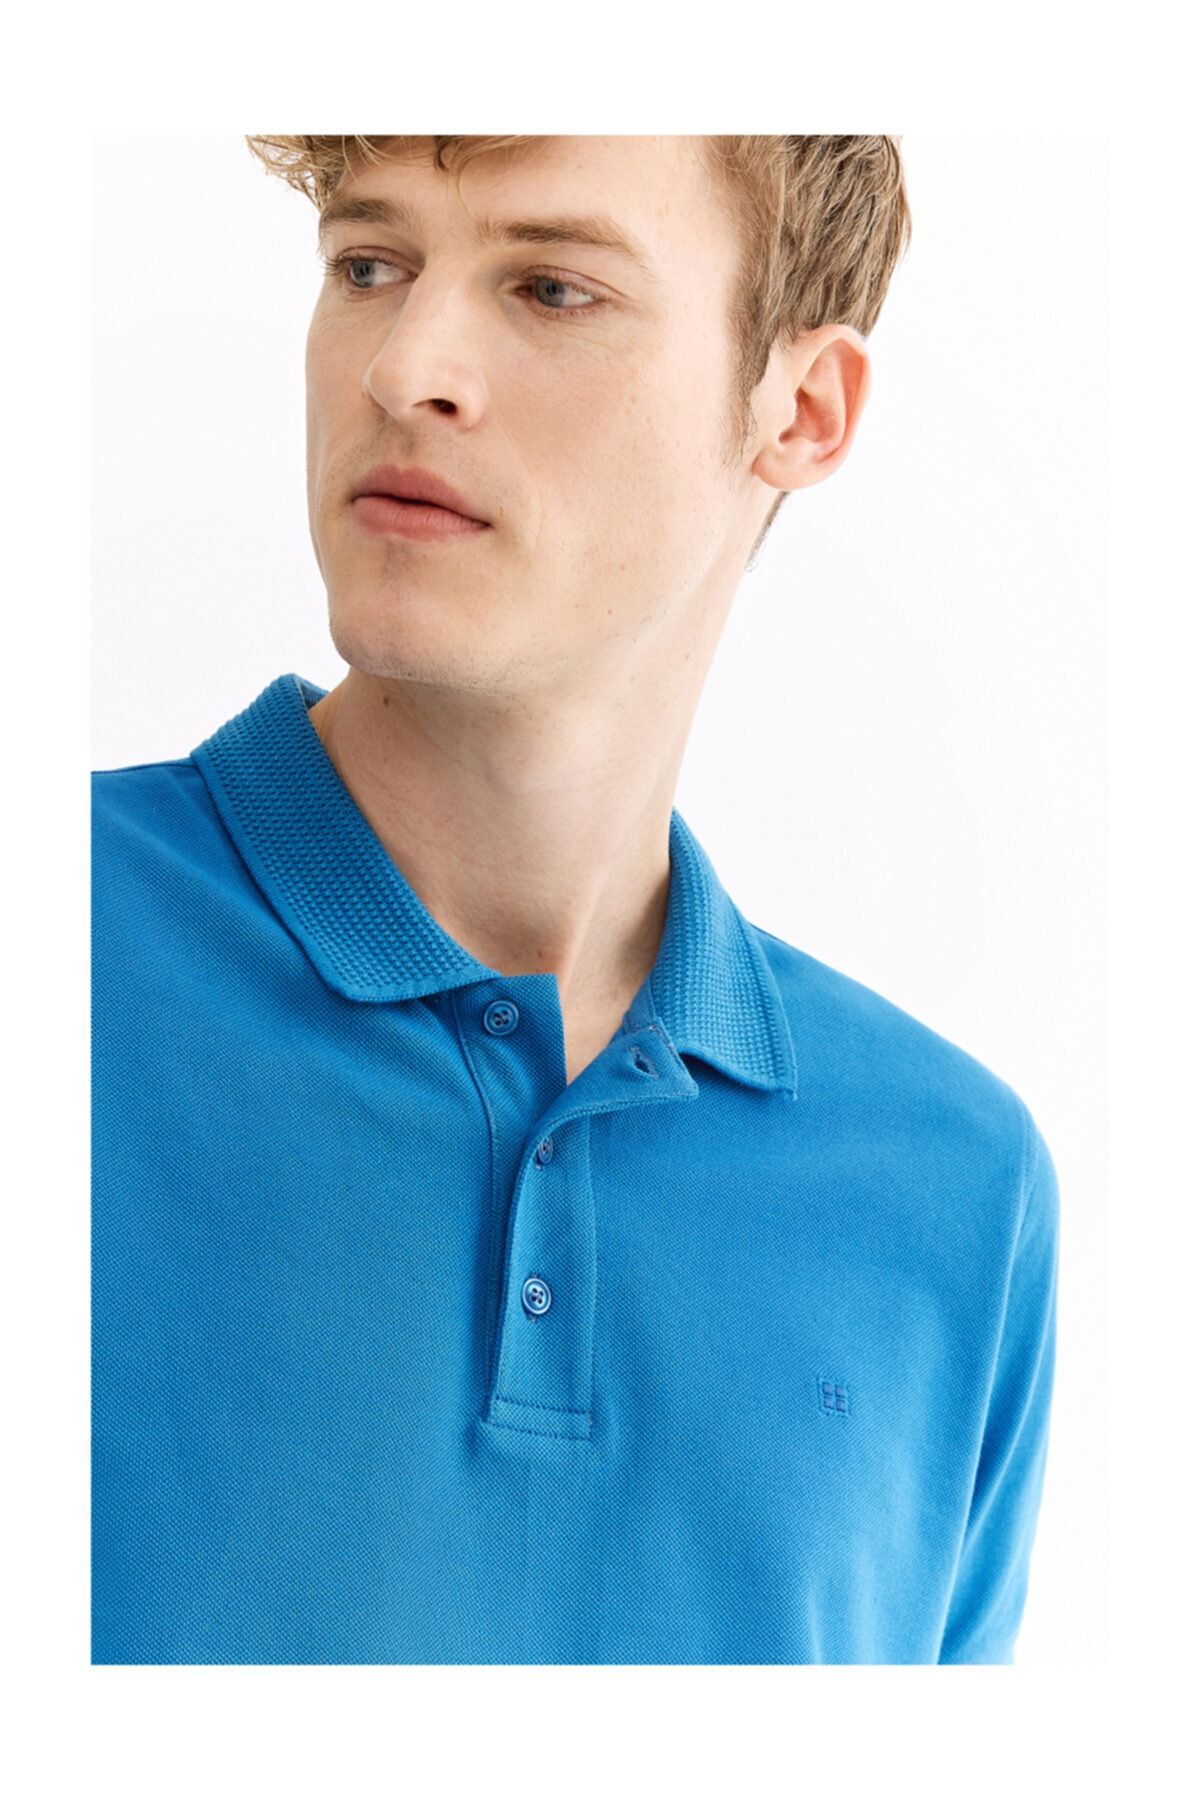 Avva Erkek Koyu Mavi Polo Yaka Düz T-shirt A01b1146